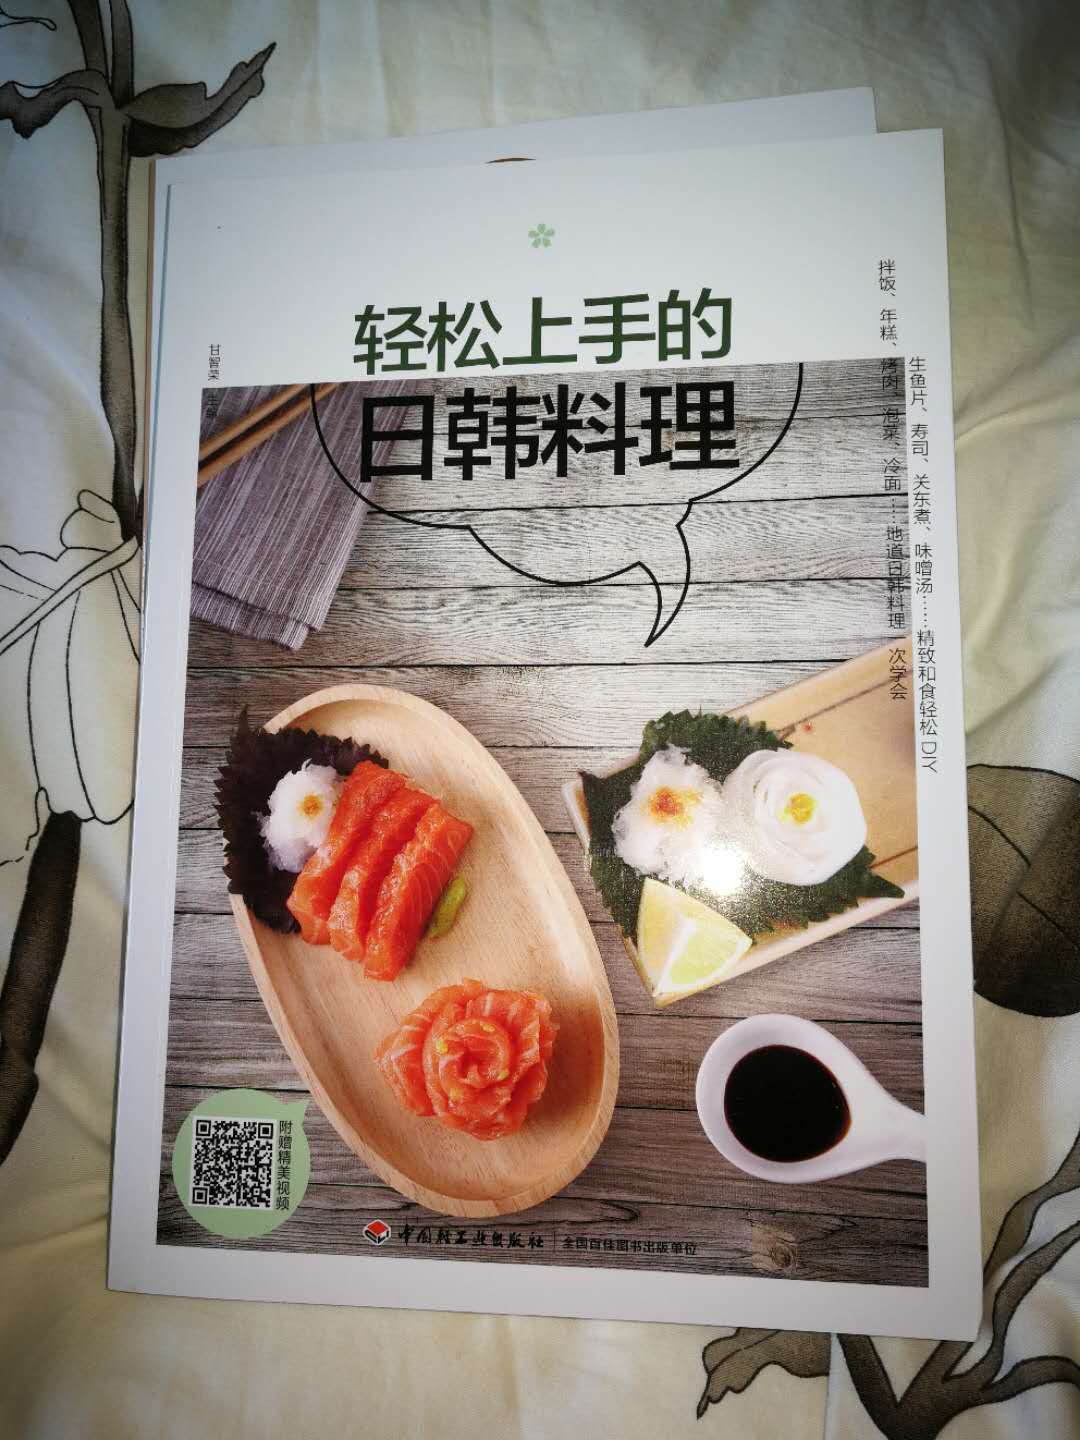 书已收到了。以后可以按照书中的菜谱做想吃的日韩料理。